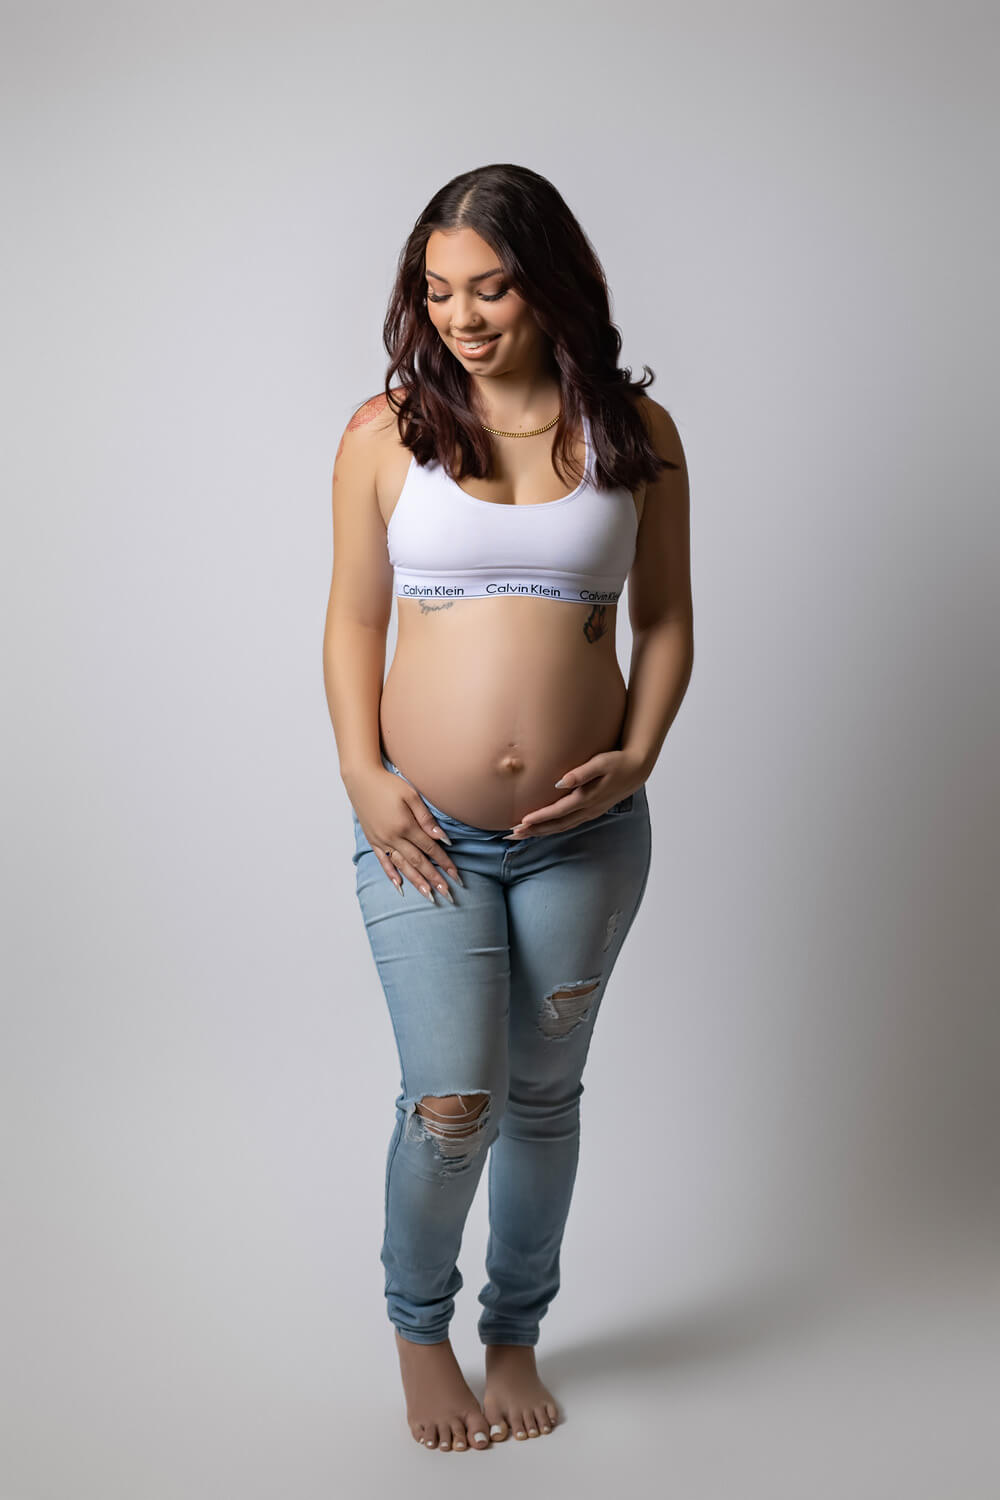 pregnancy photo in jeans